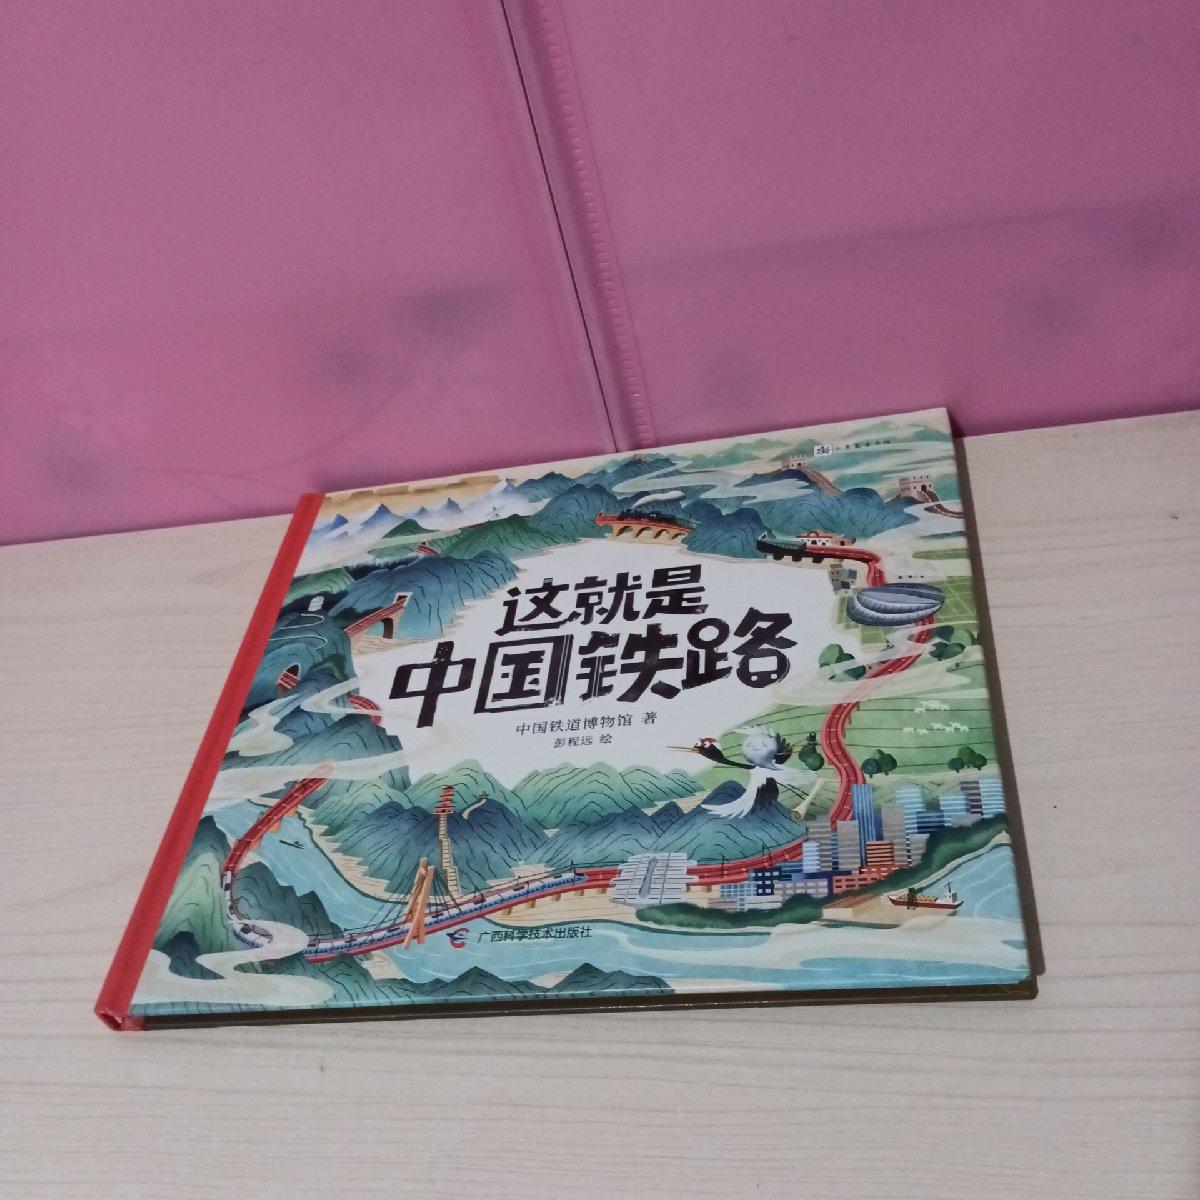 正版新书 这就是中国铁路 中国铁道博物馆著 9787555117407 广西科学技术出版社